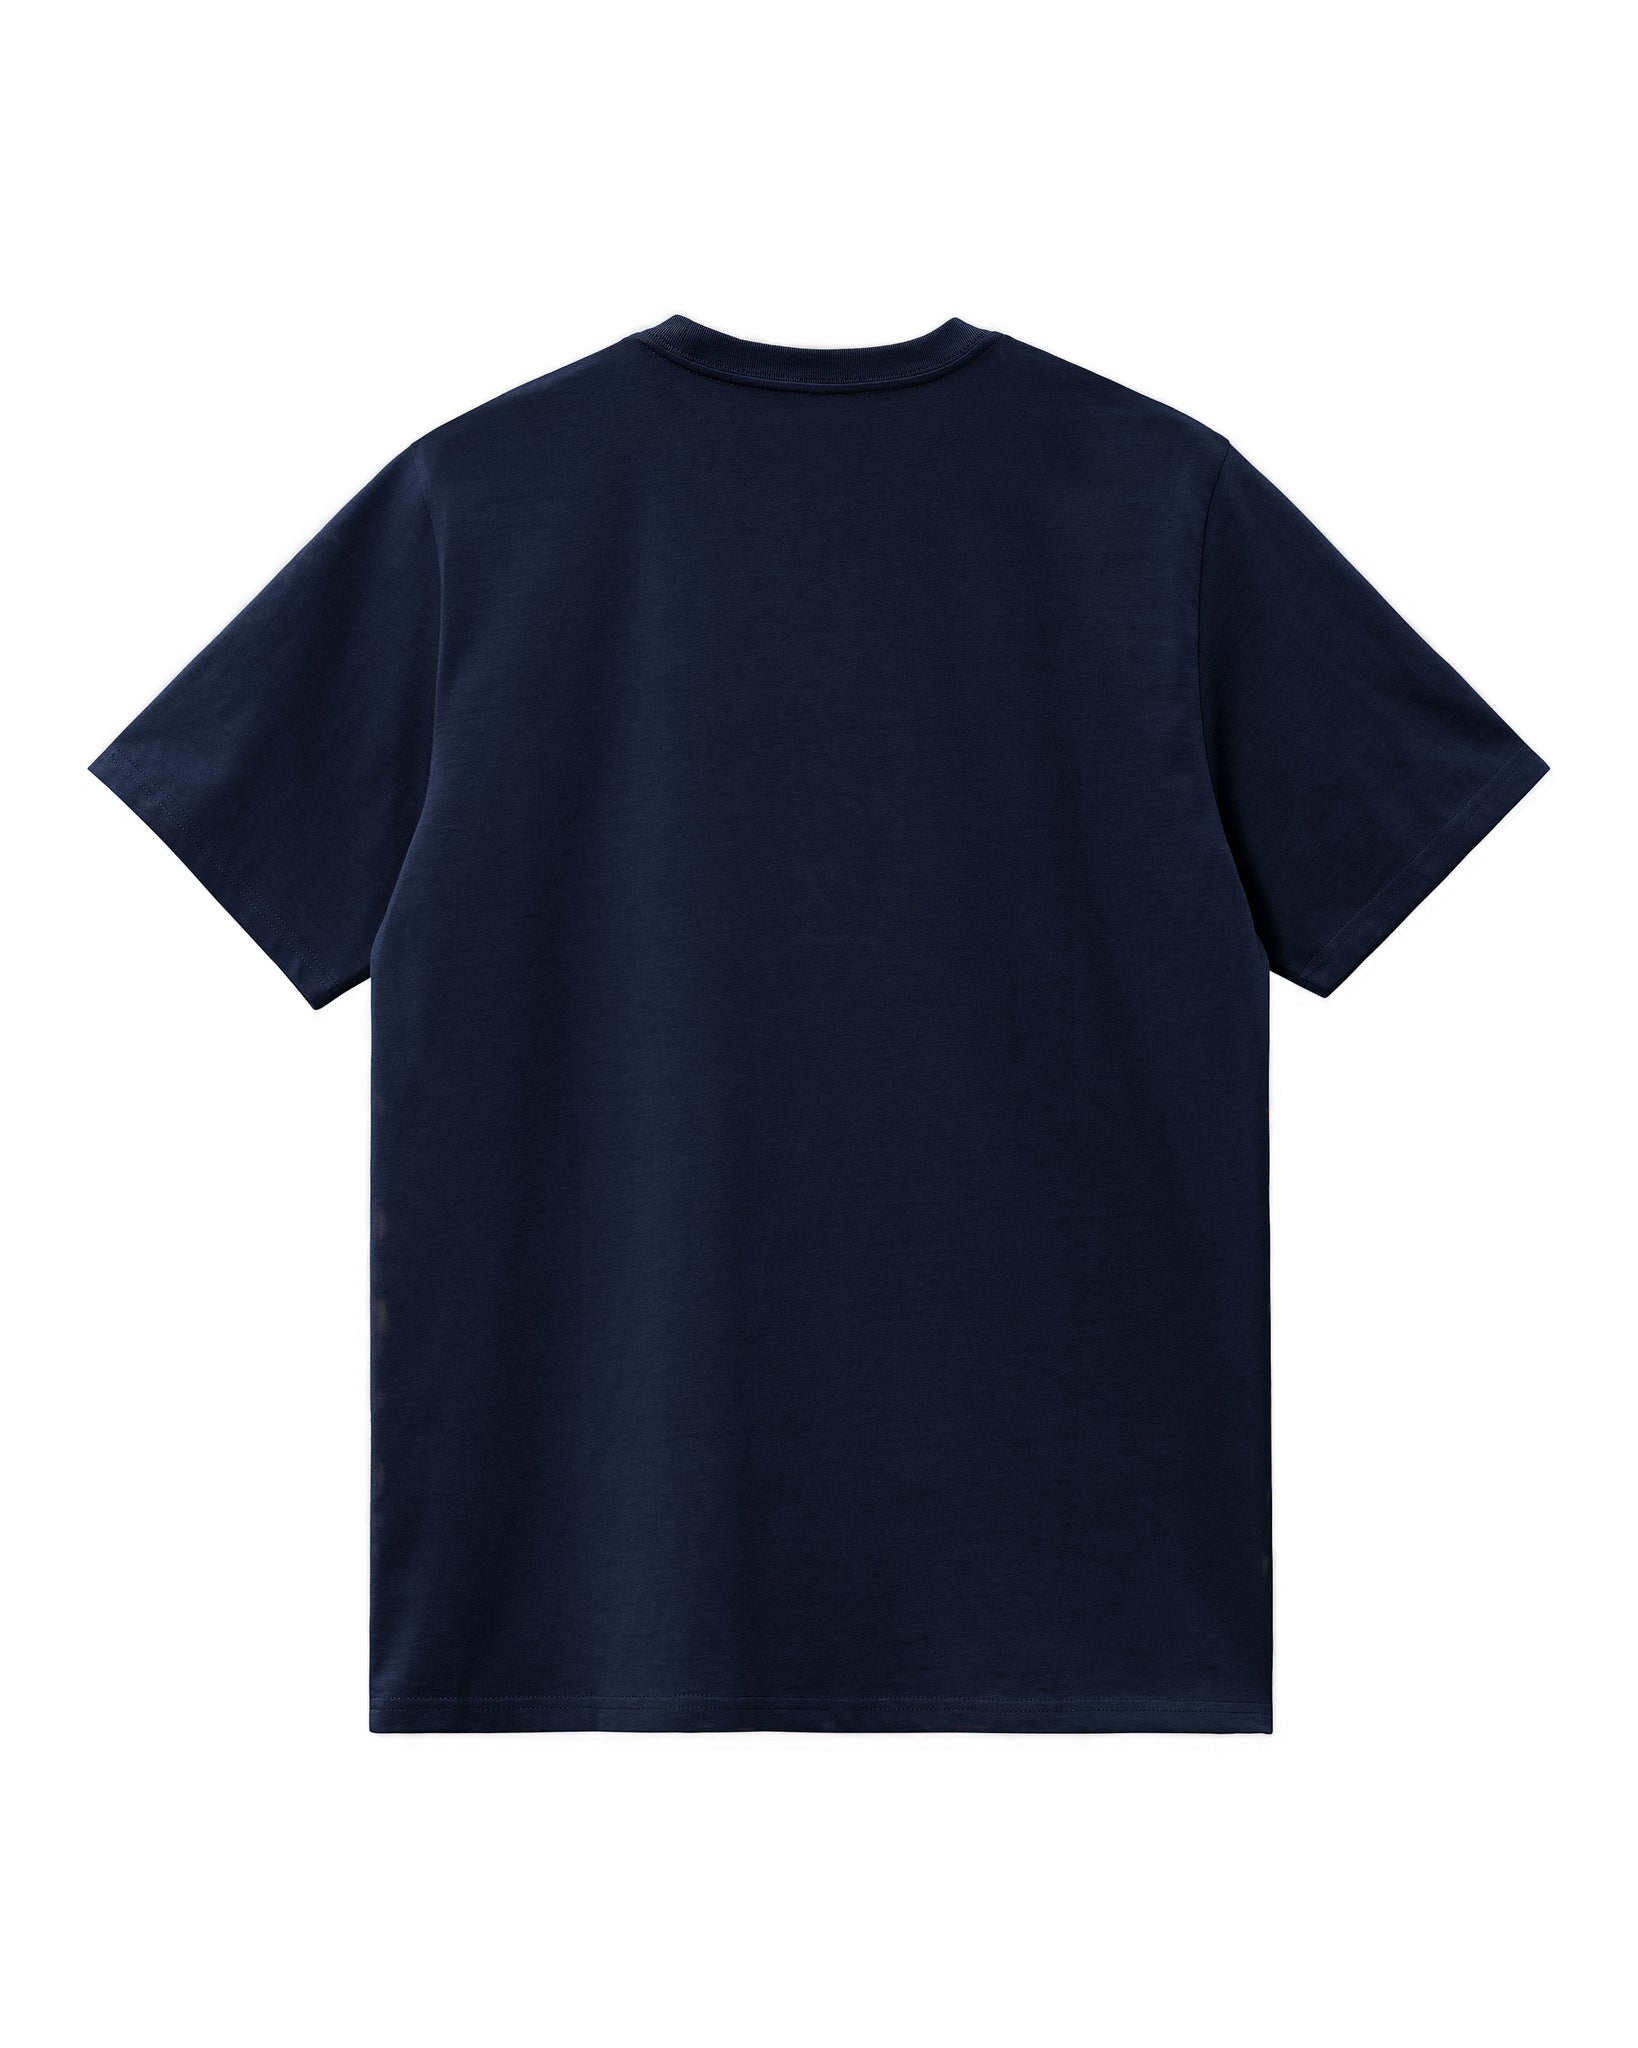 SS Pocket T-Shirt - Dark Navy